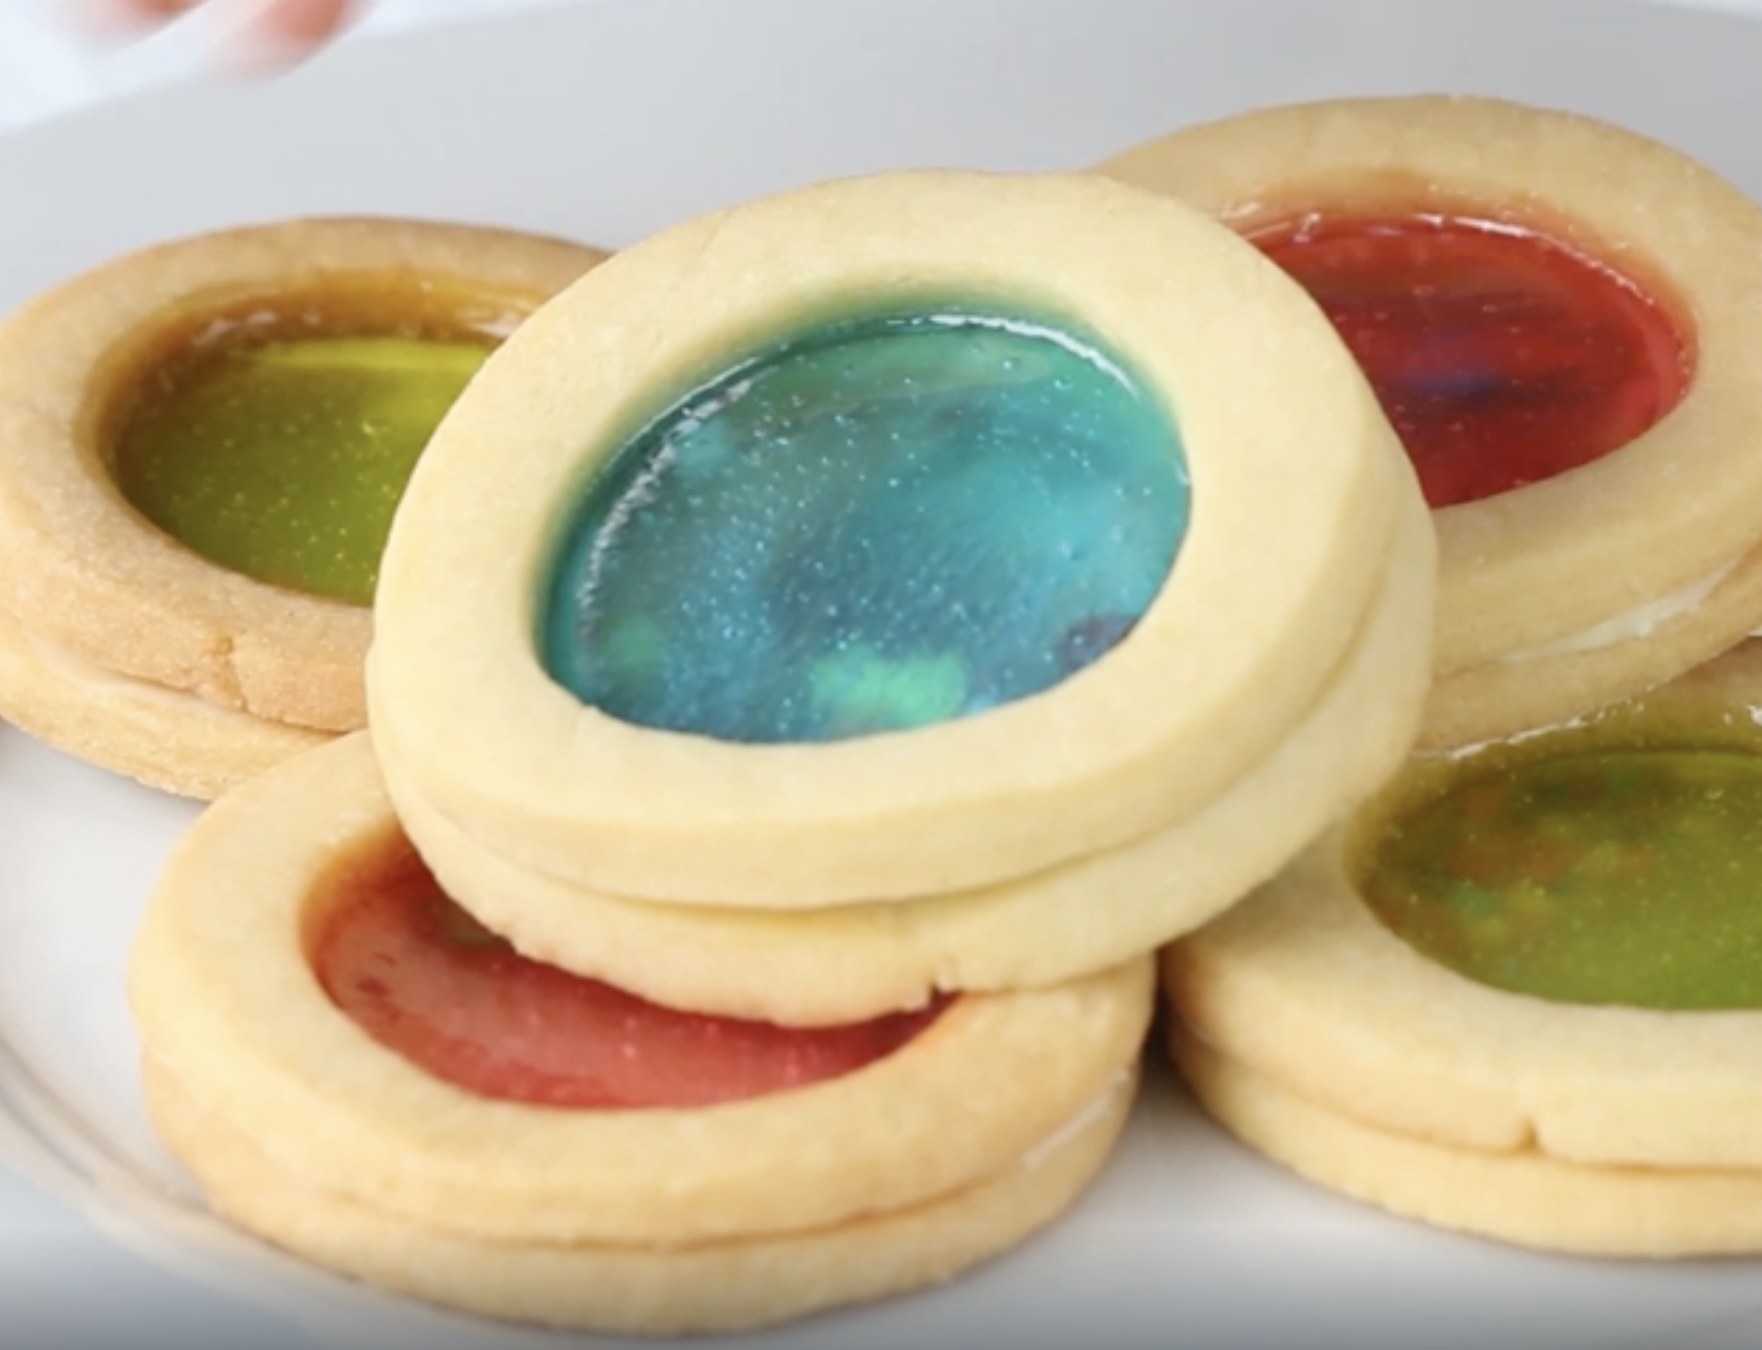 The aquarium cookies in multiple colors